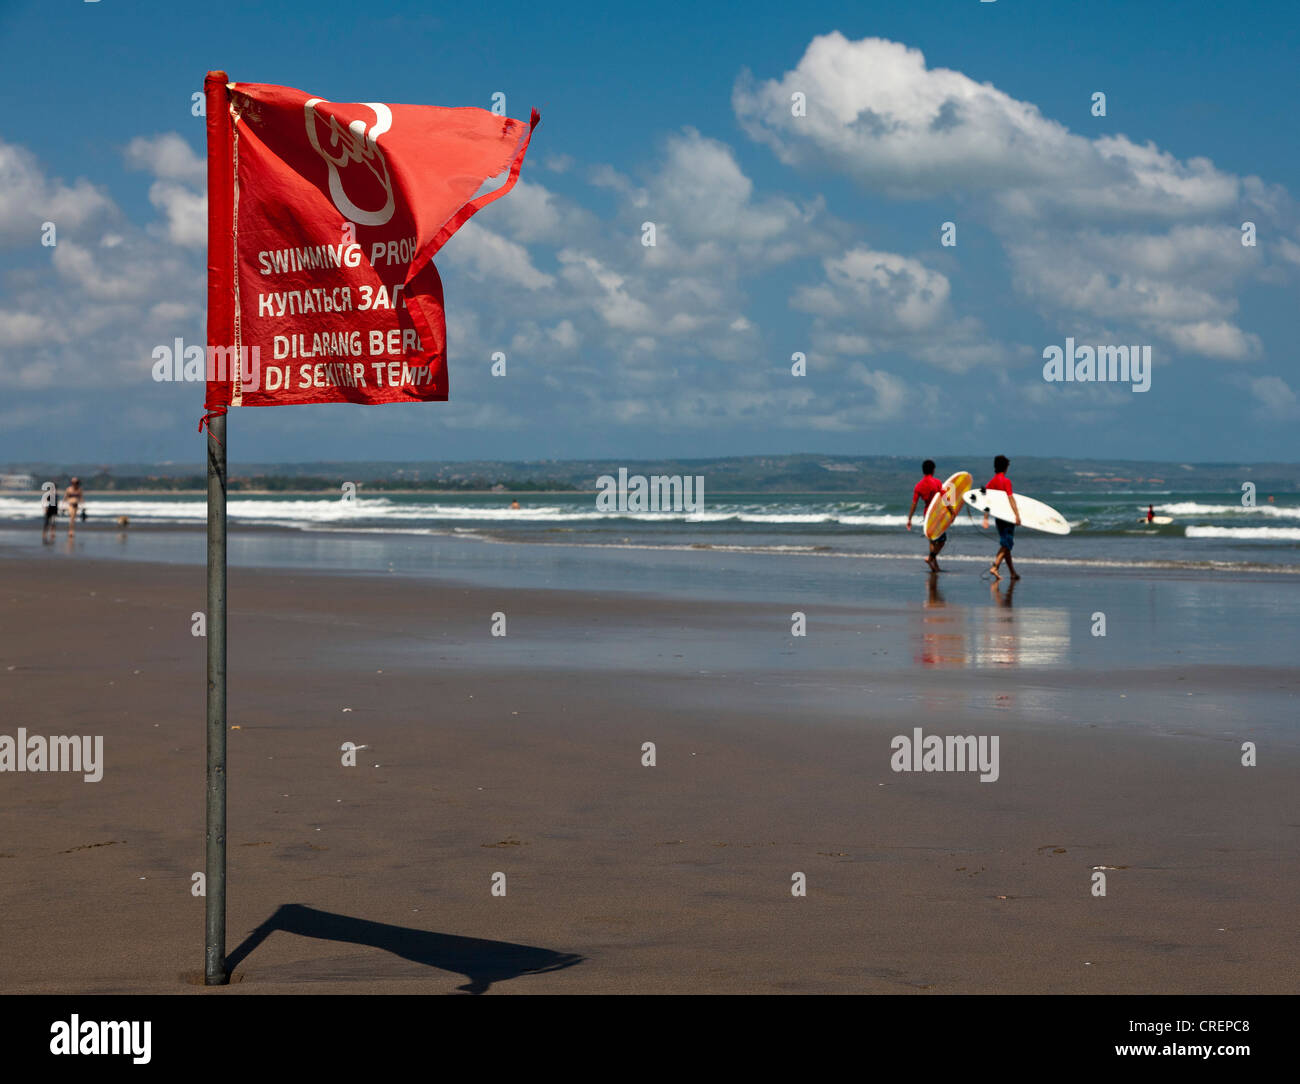 Un indicateur d'alerte rouge, la baignade interdite, Kuta Beach, paradis des surfeurs, du sud de Bali, Bali, Indonésie, Asie du Sud, Asie Banque D'Images